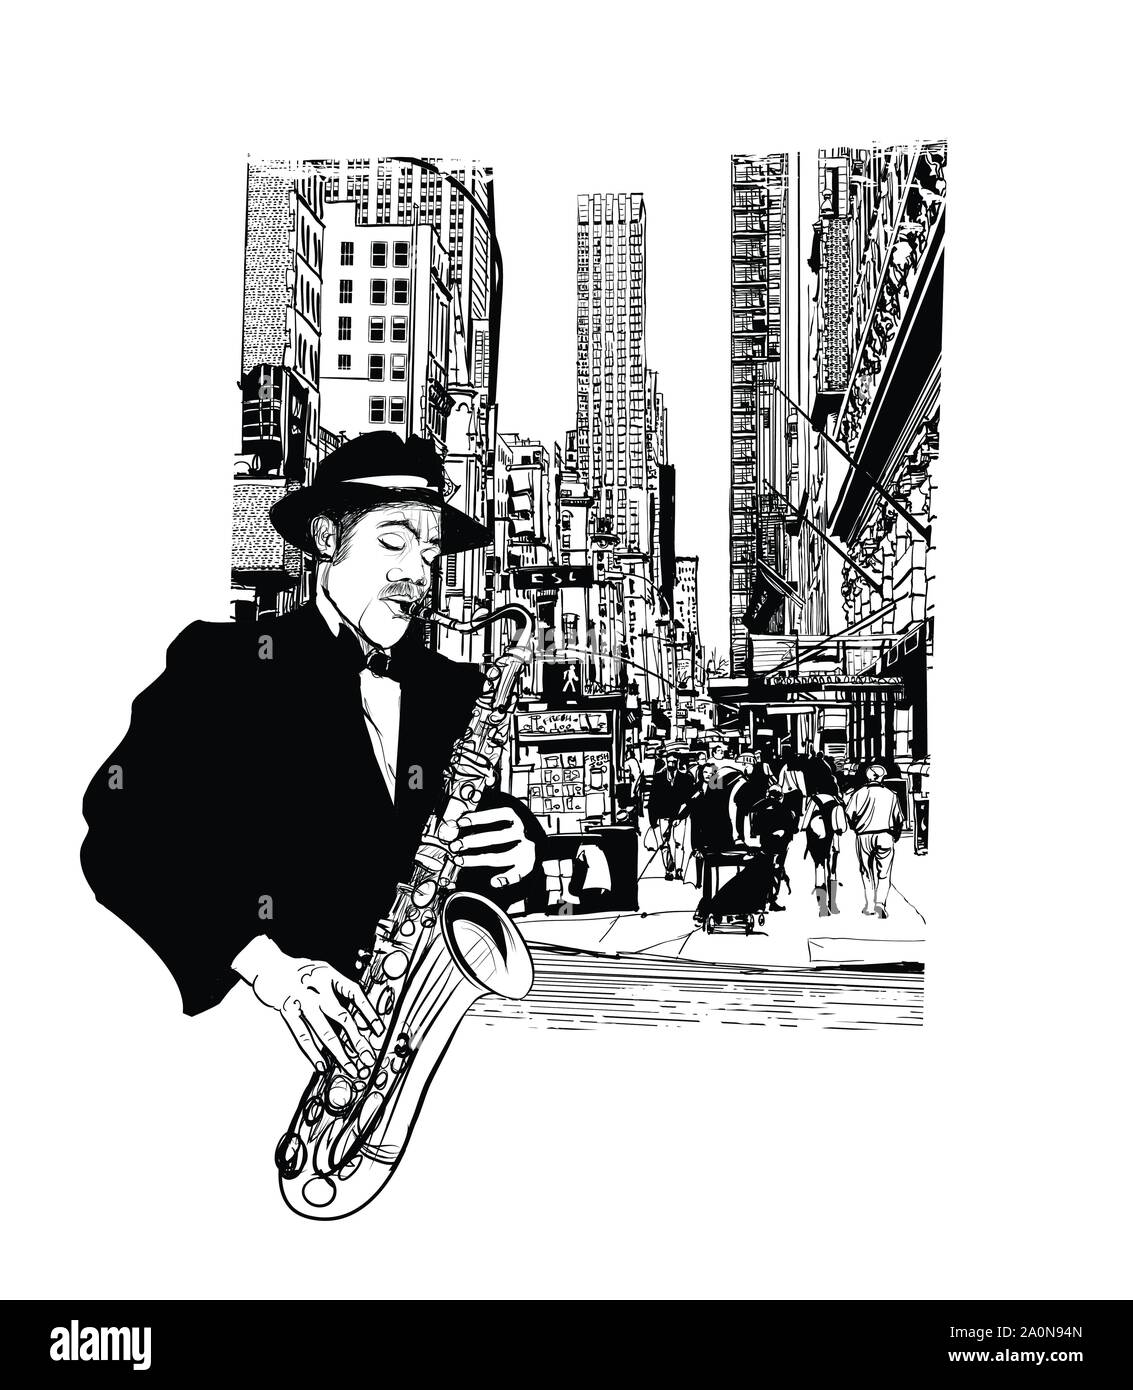 Il sassofonista jazz di New York - illustrazione vettoriale (ideale per la stampa su tessuto o carta, poster o di sfondo, la decorazione della casa) Illustrazione Vettoriale